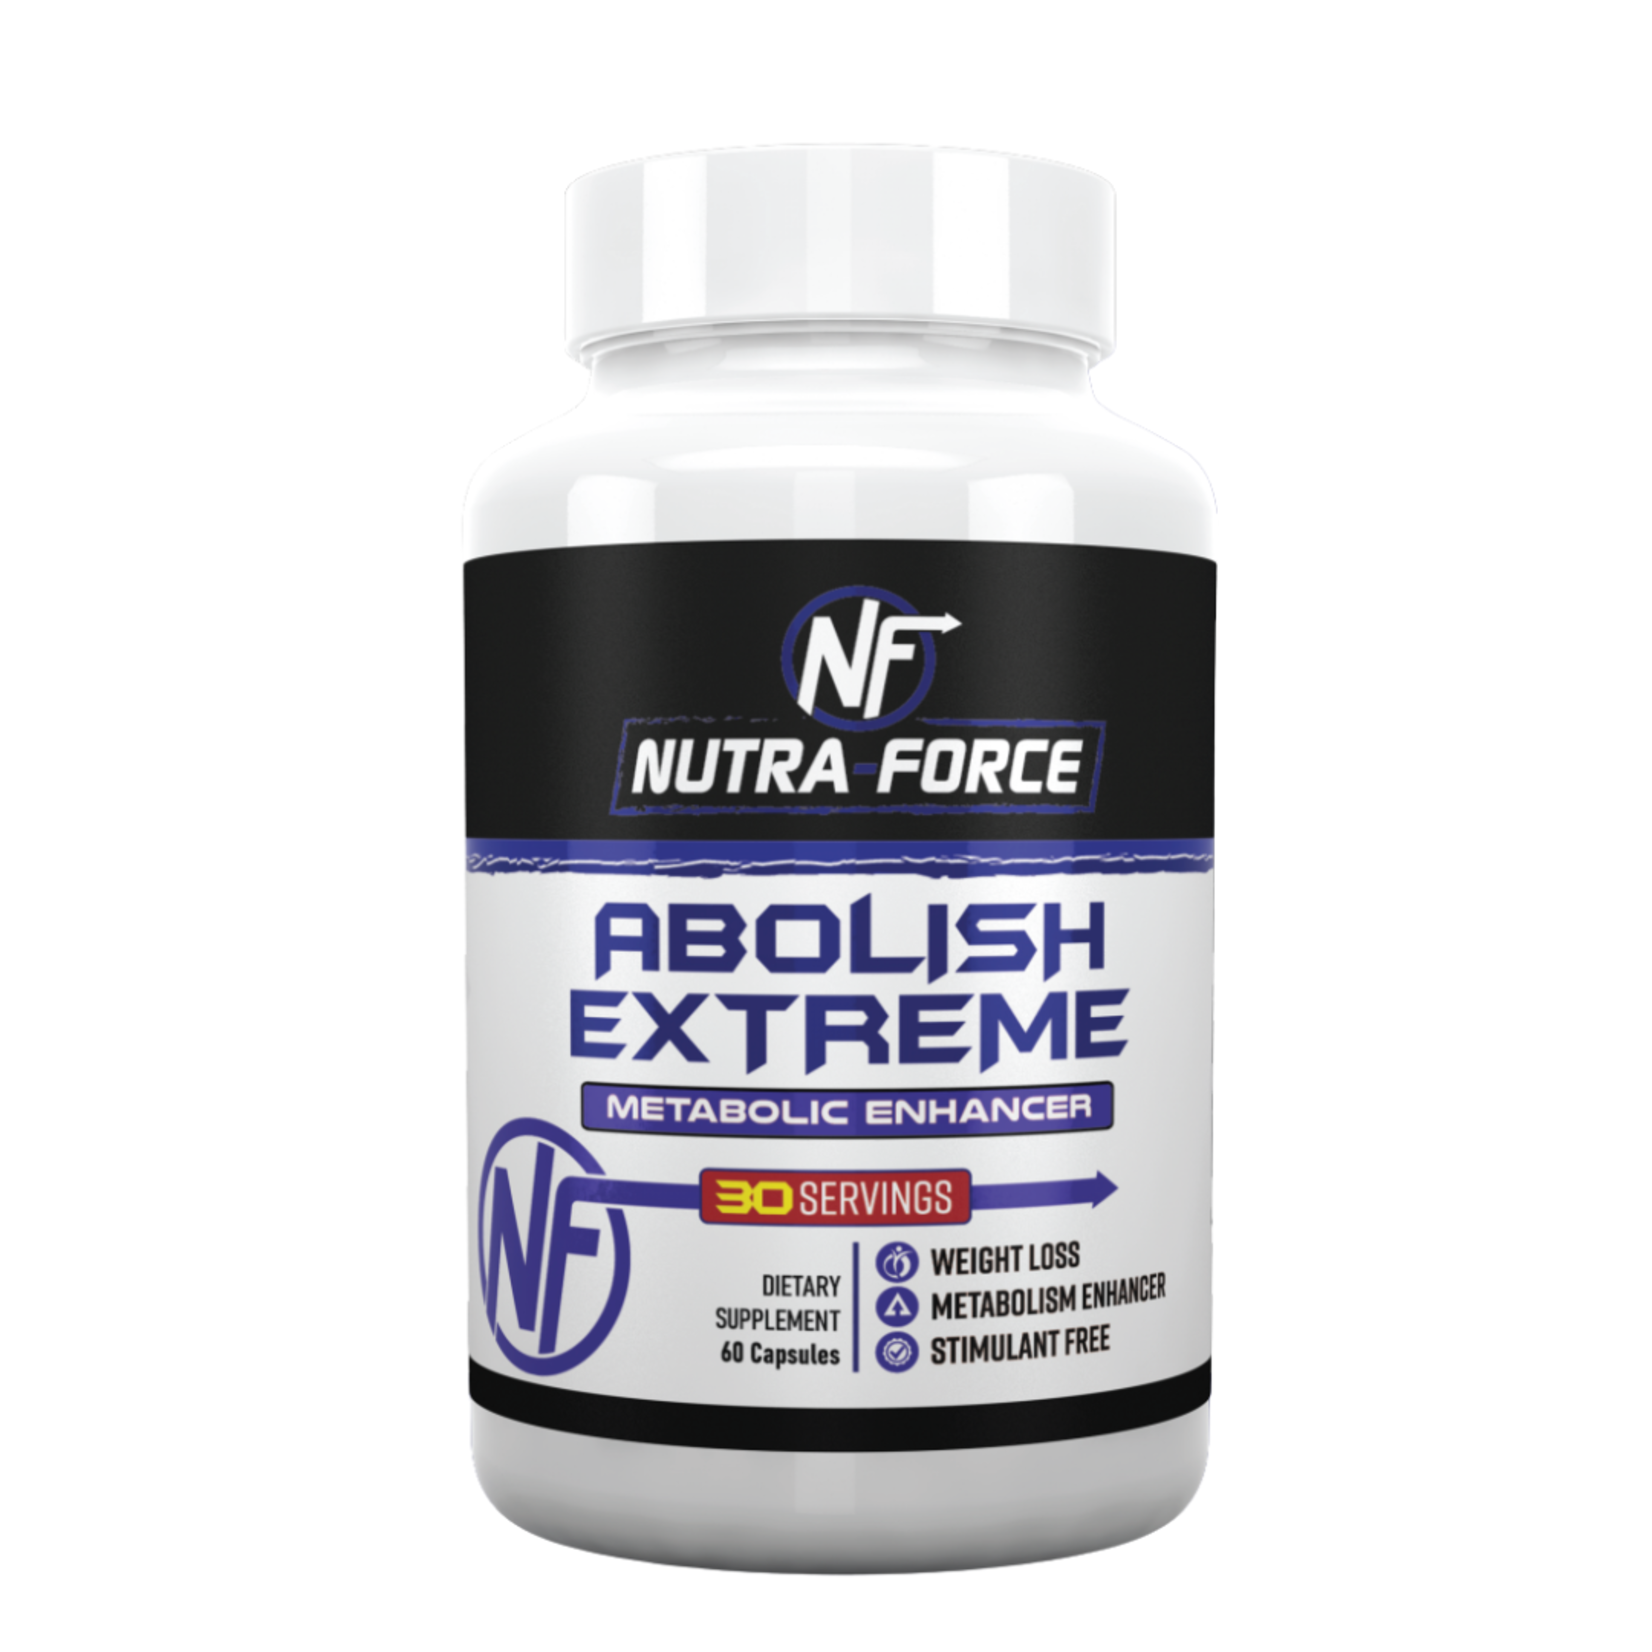 Nutra Force Abolished Extreme